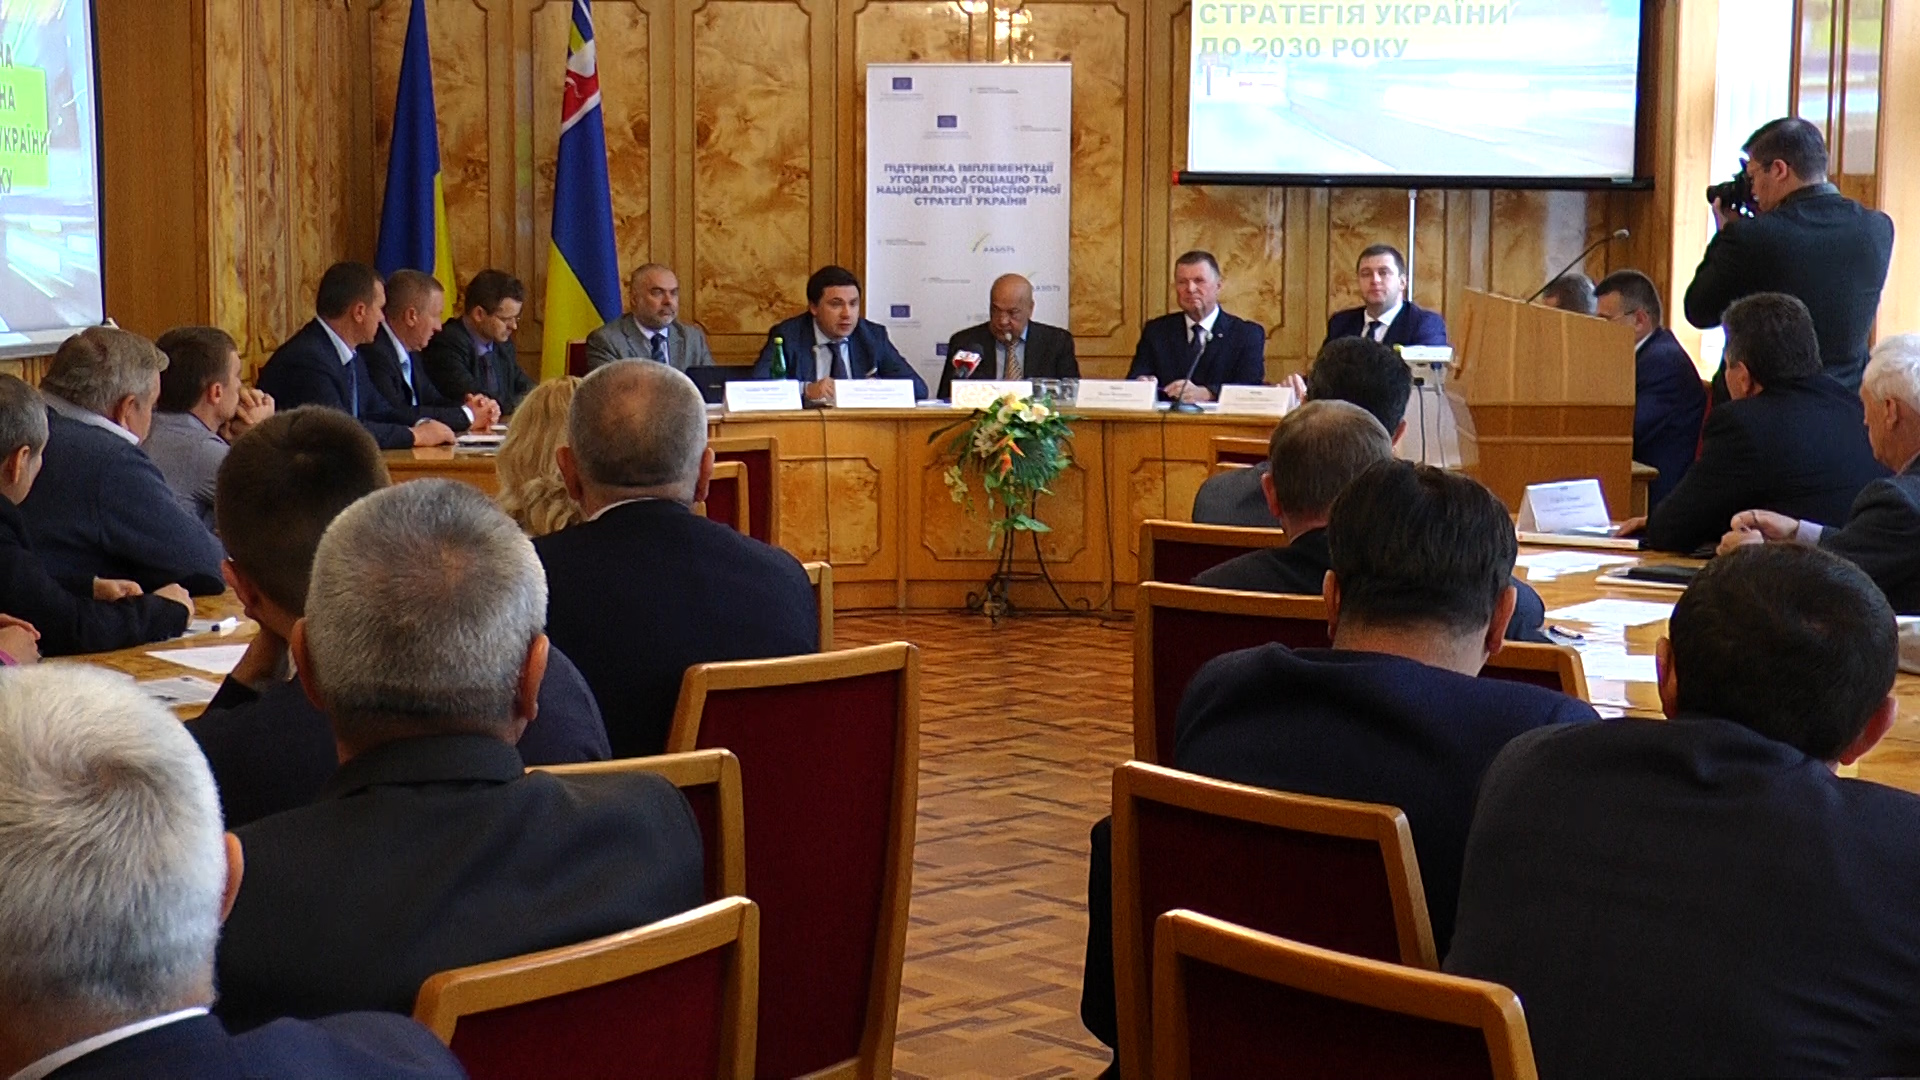 В Ужгороді розповіли про транспортну стратегію України до 2030 року (ВІДЕО)